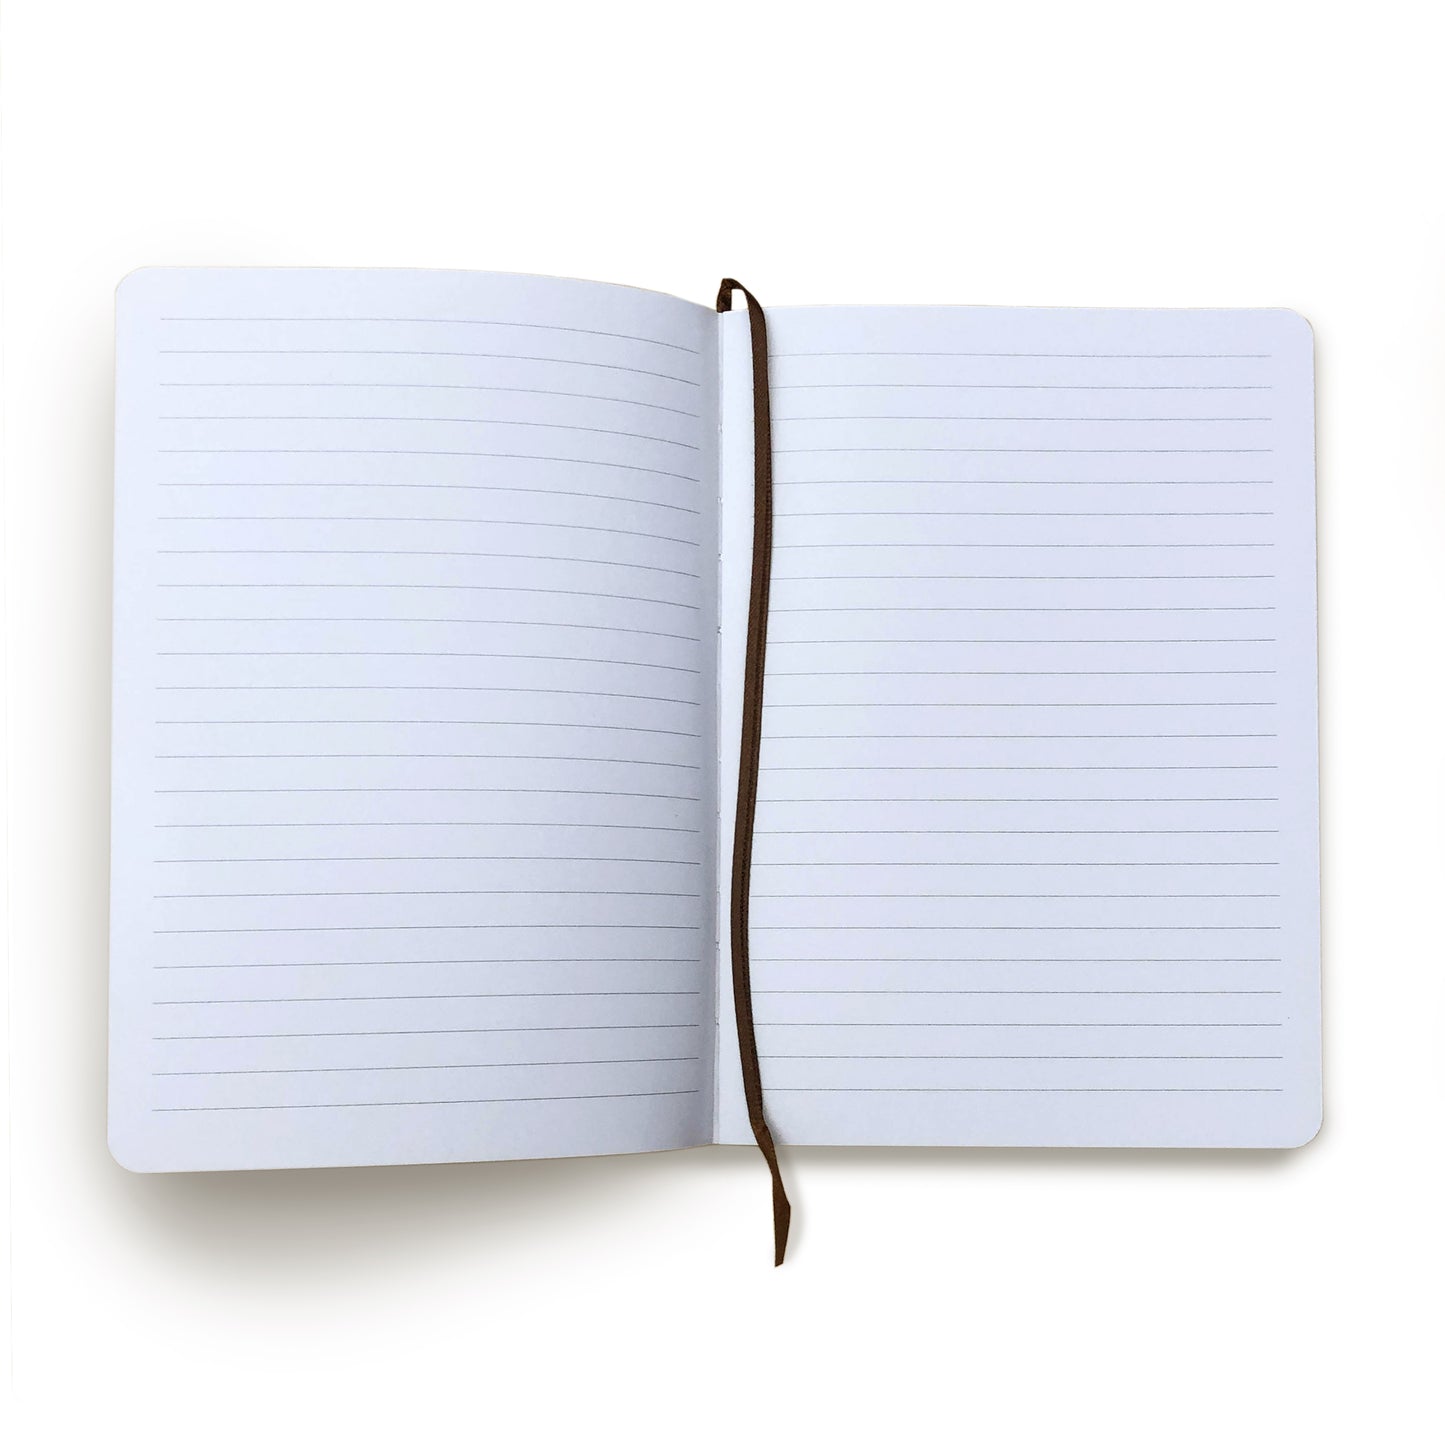 Cuaderno de Regla A5 recargable de 8.25 x 5.6 para la tapa de cuero de la sierra de arco.